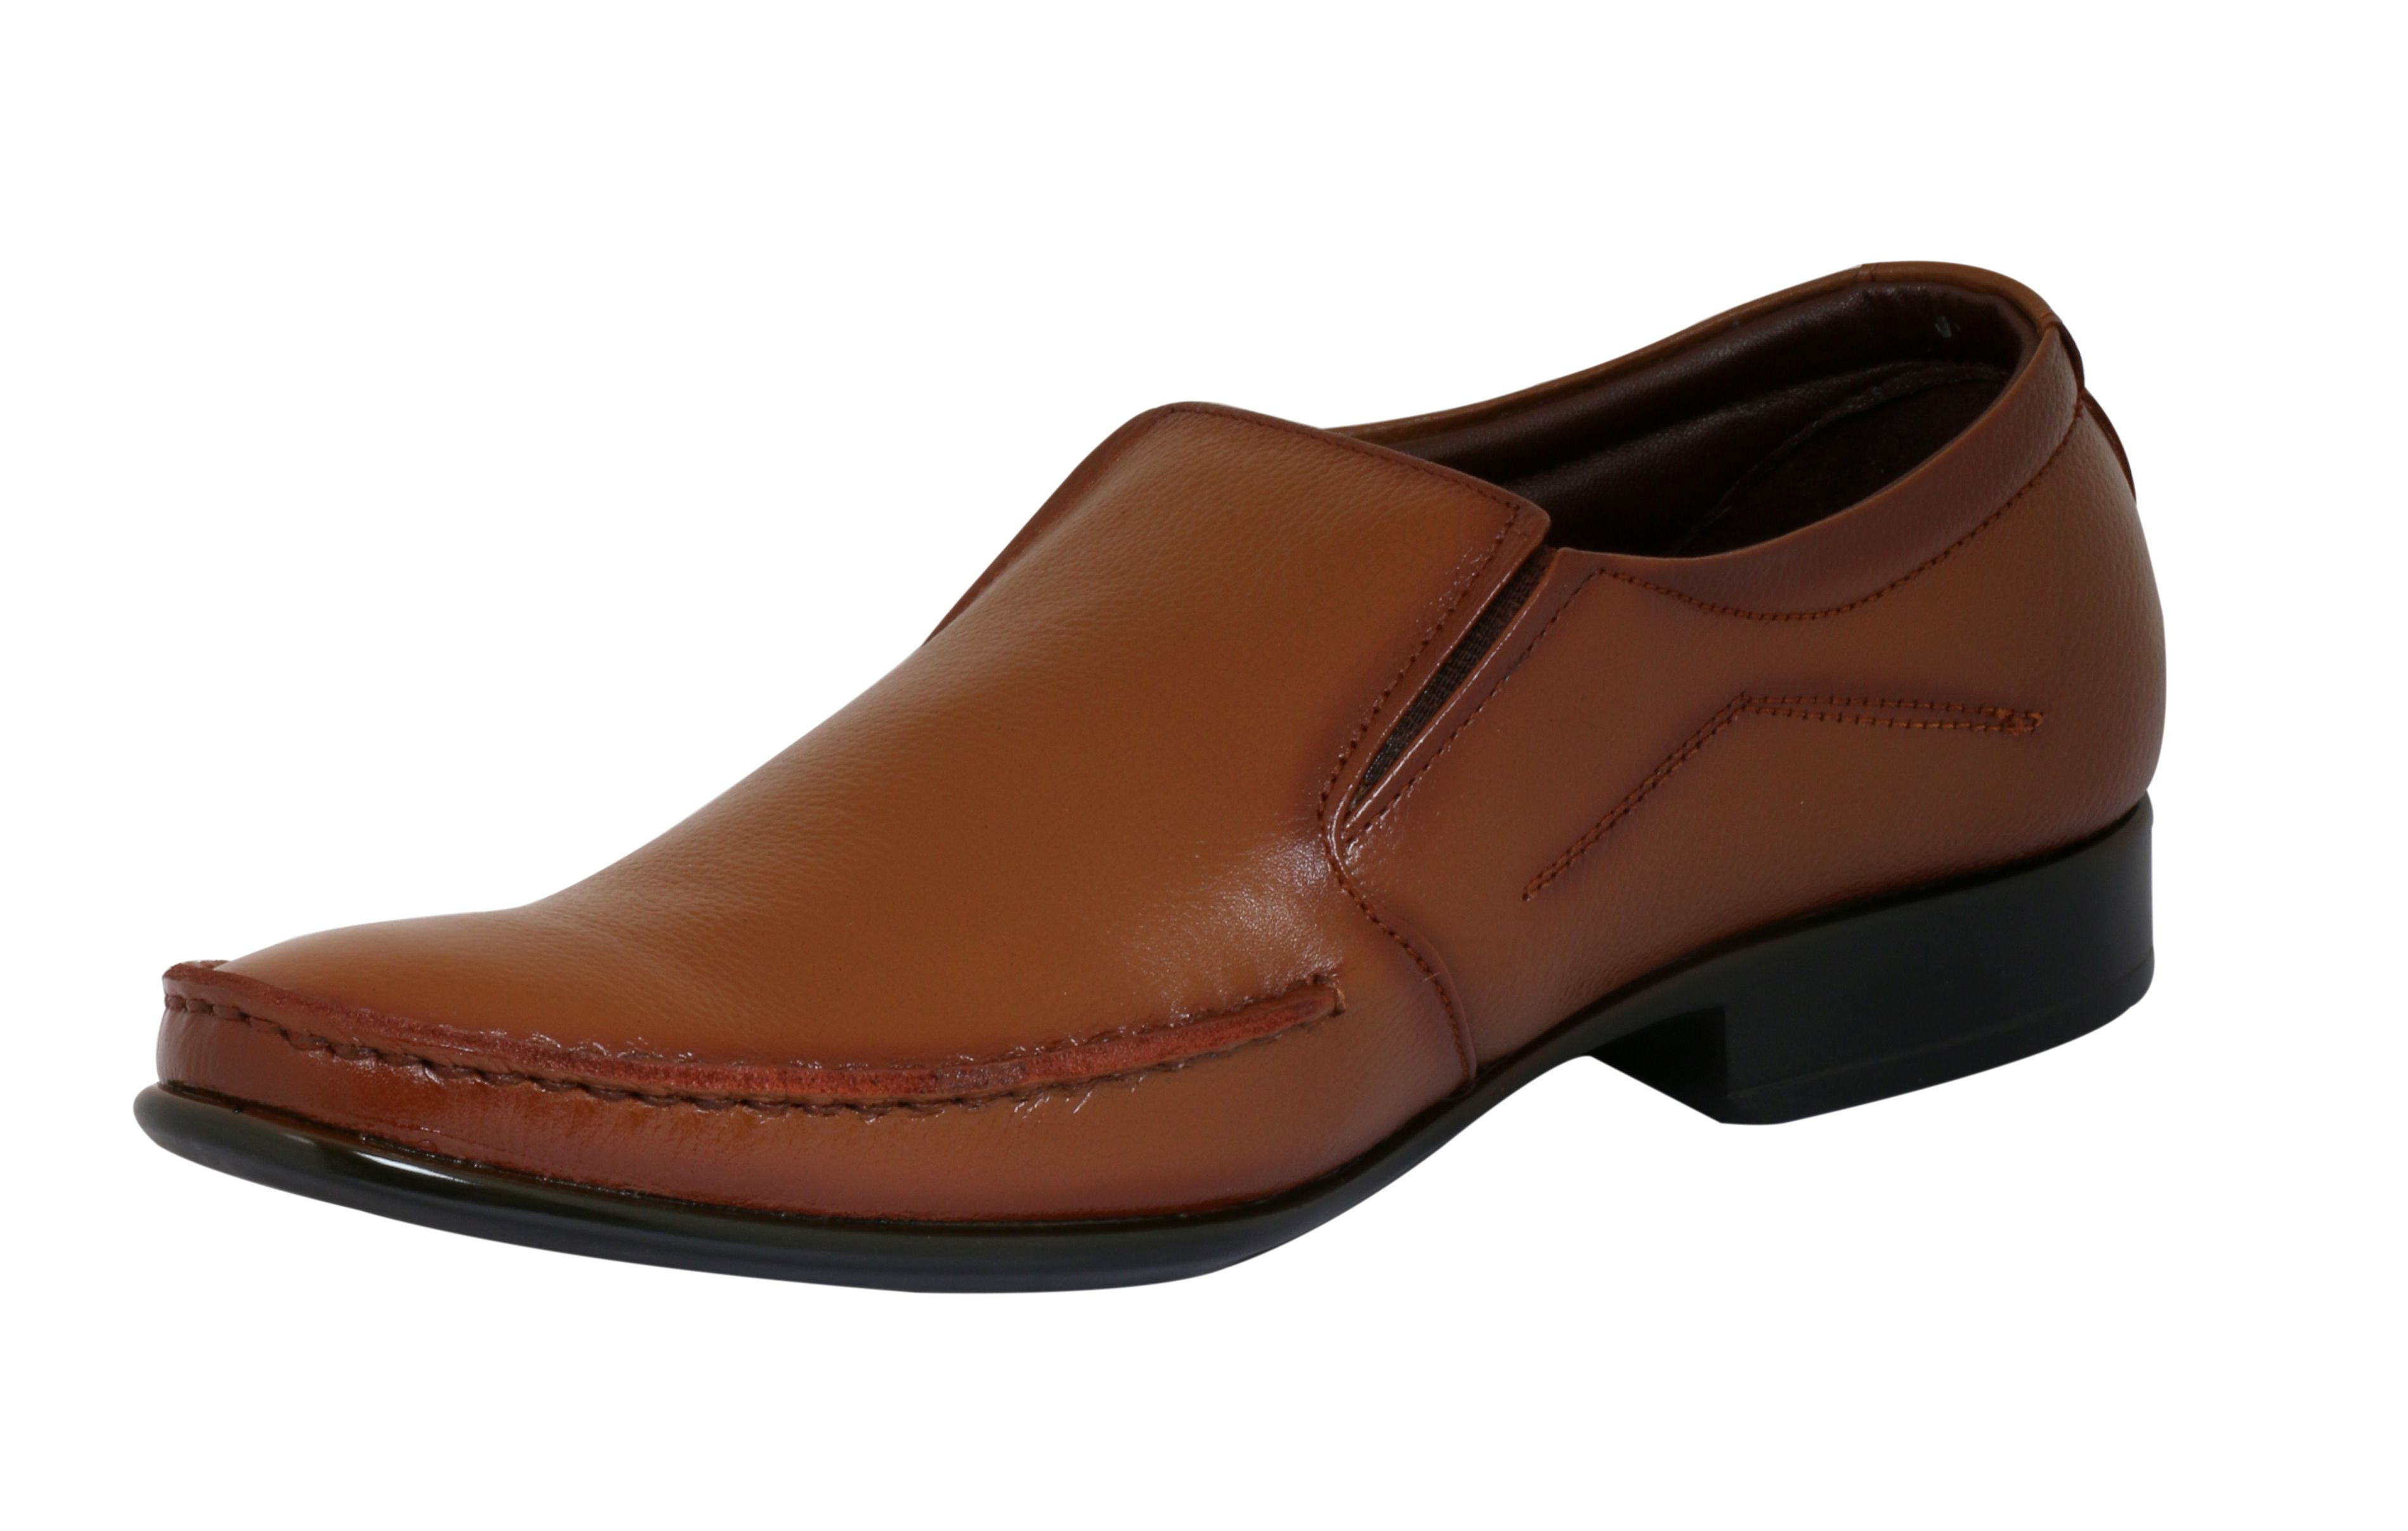 Dokmen Tan Slip On Genuine Leather Formal Shoes Price In India Buy